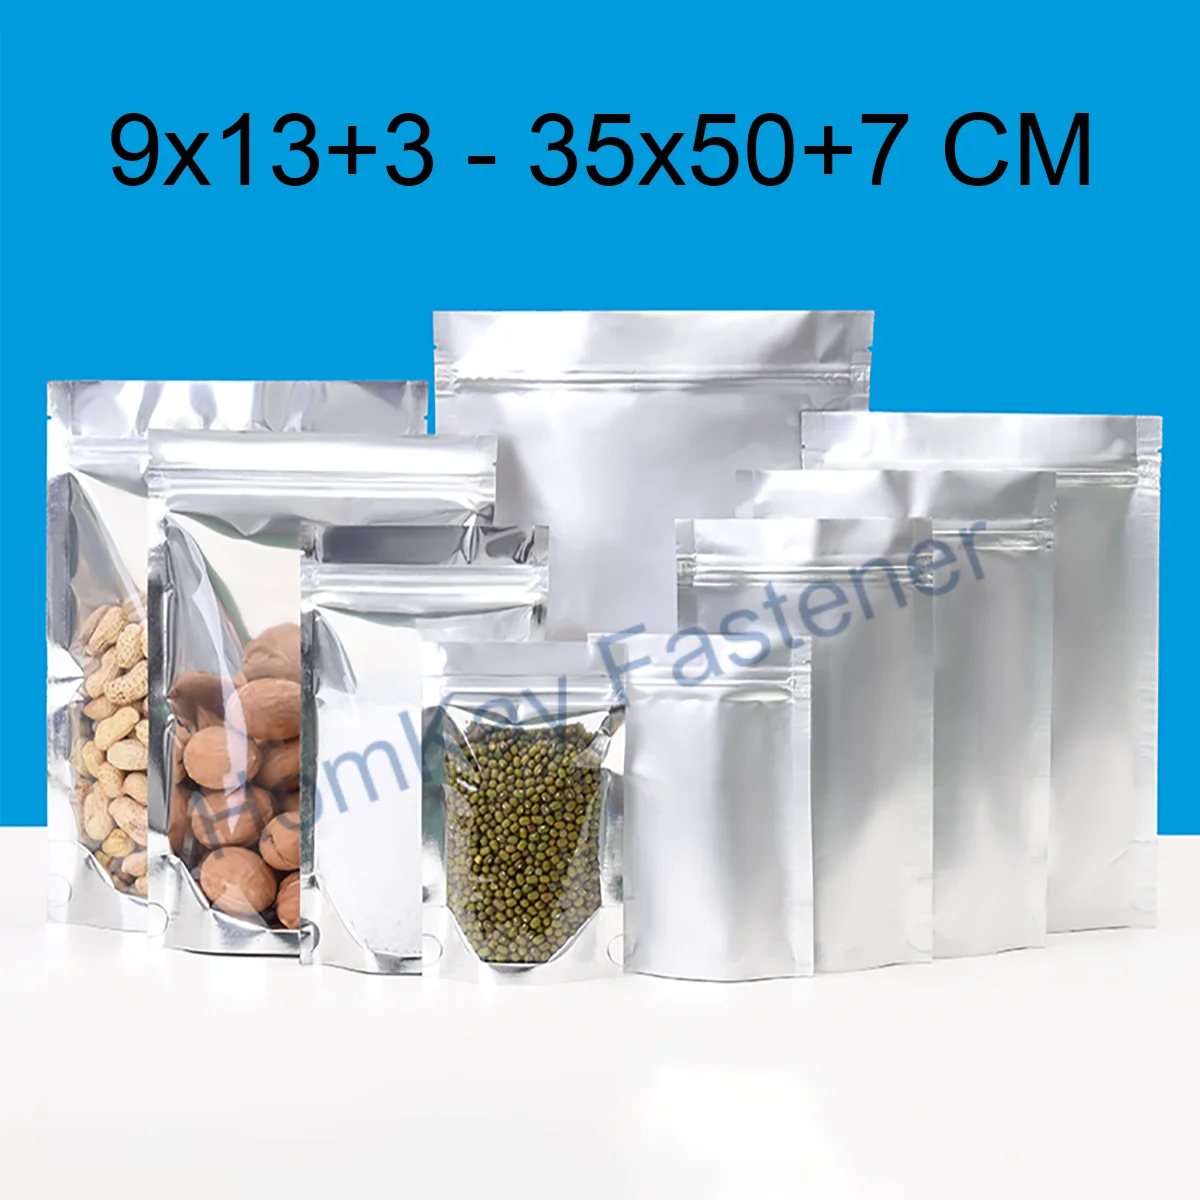 

50 шт. 9x13 + 3-35x50 + 7 см 0,16/0,24 мм, алюминиевые самостоятельные пакеты, травяной чай и сушеные фрукты, упаковка для еды, герметичные пакеты